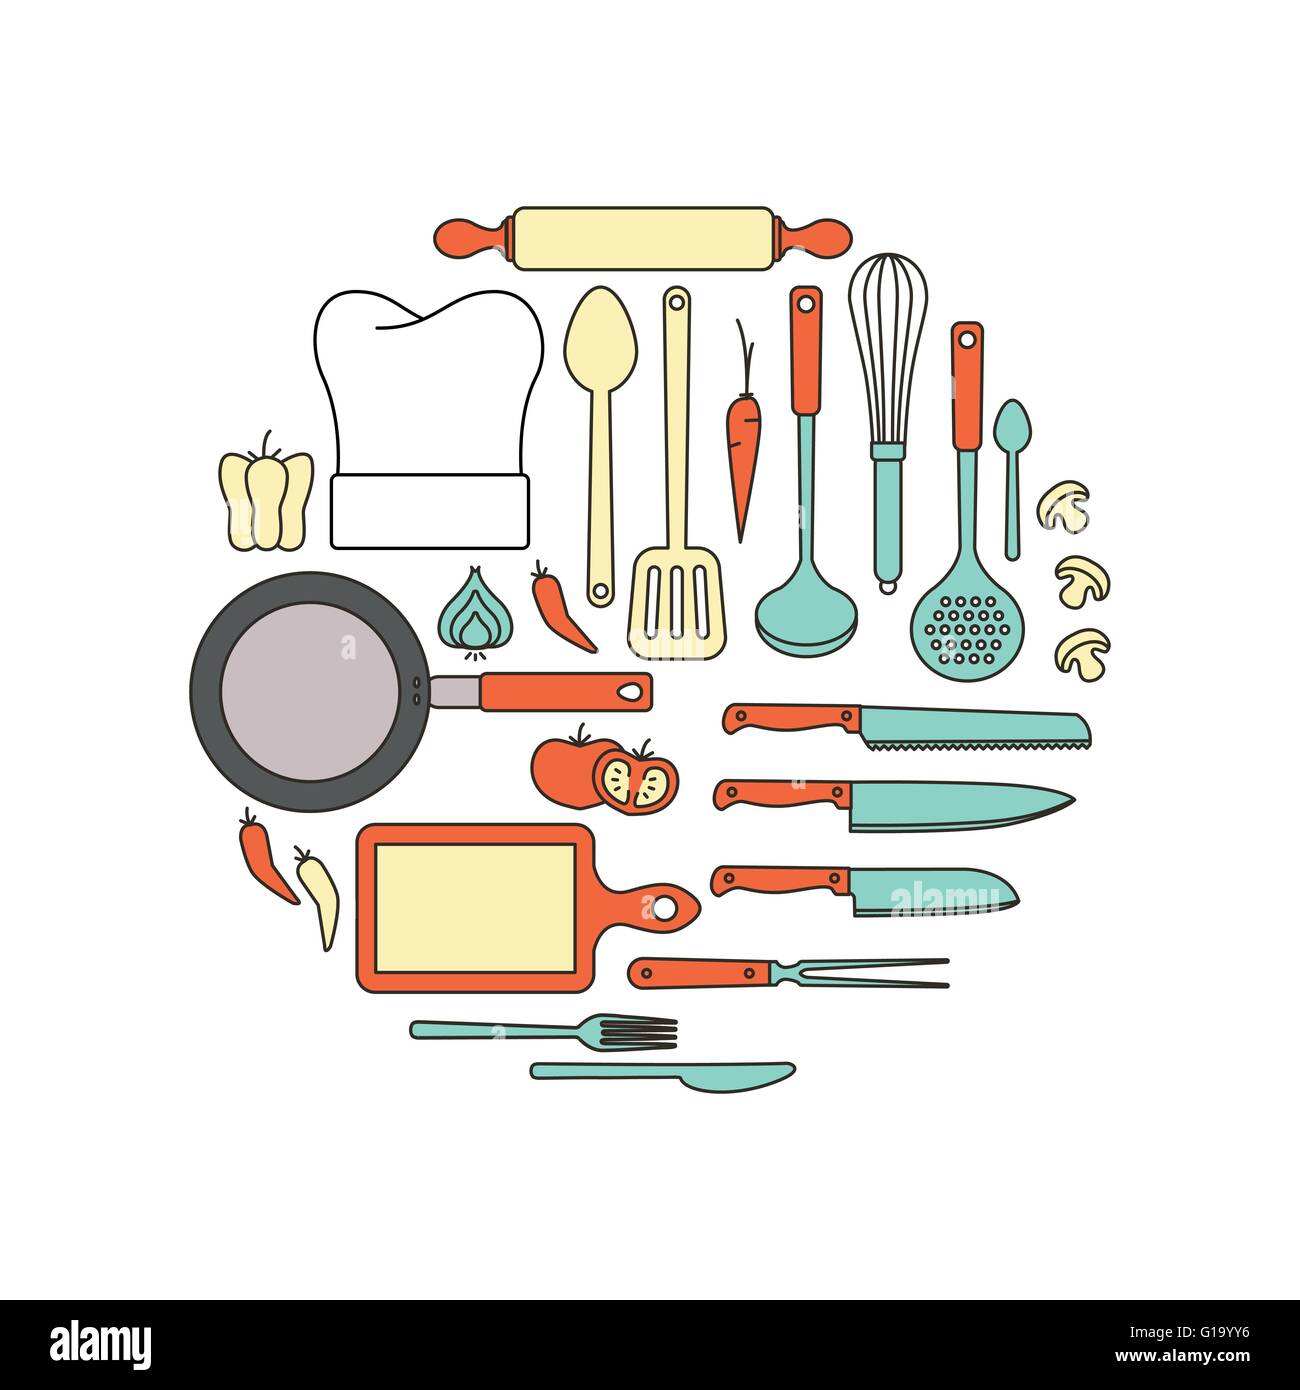 Cuisine et de matériel de cuisine, fine ligne d'objets dans une forme circulaire sur fond blanc Illustration de Vecteur